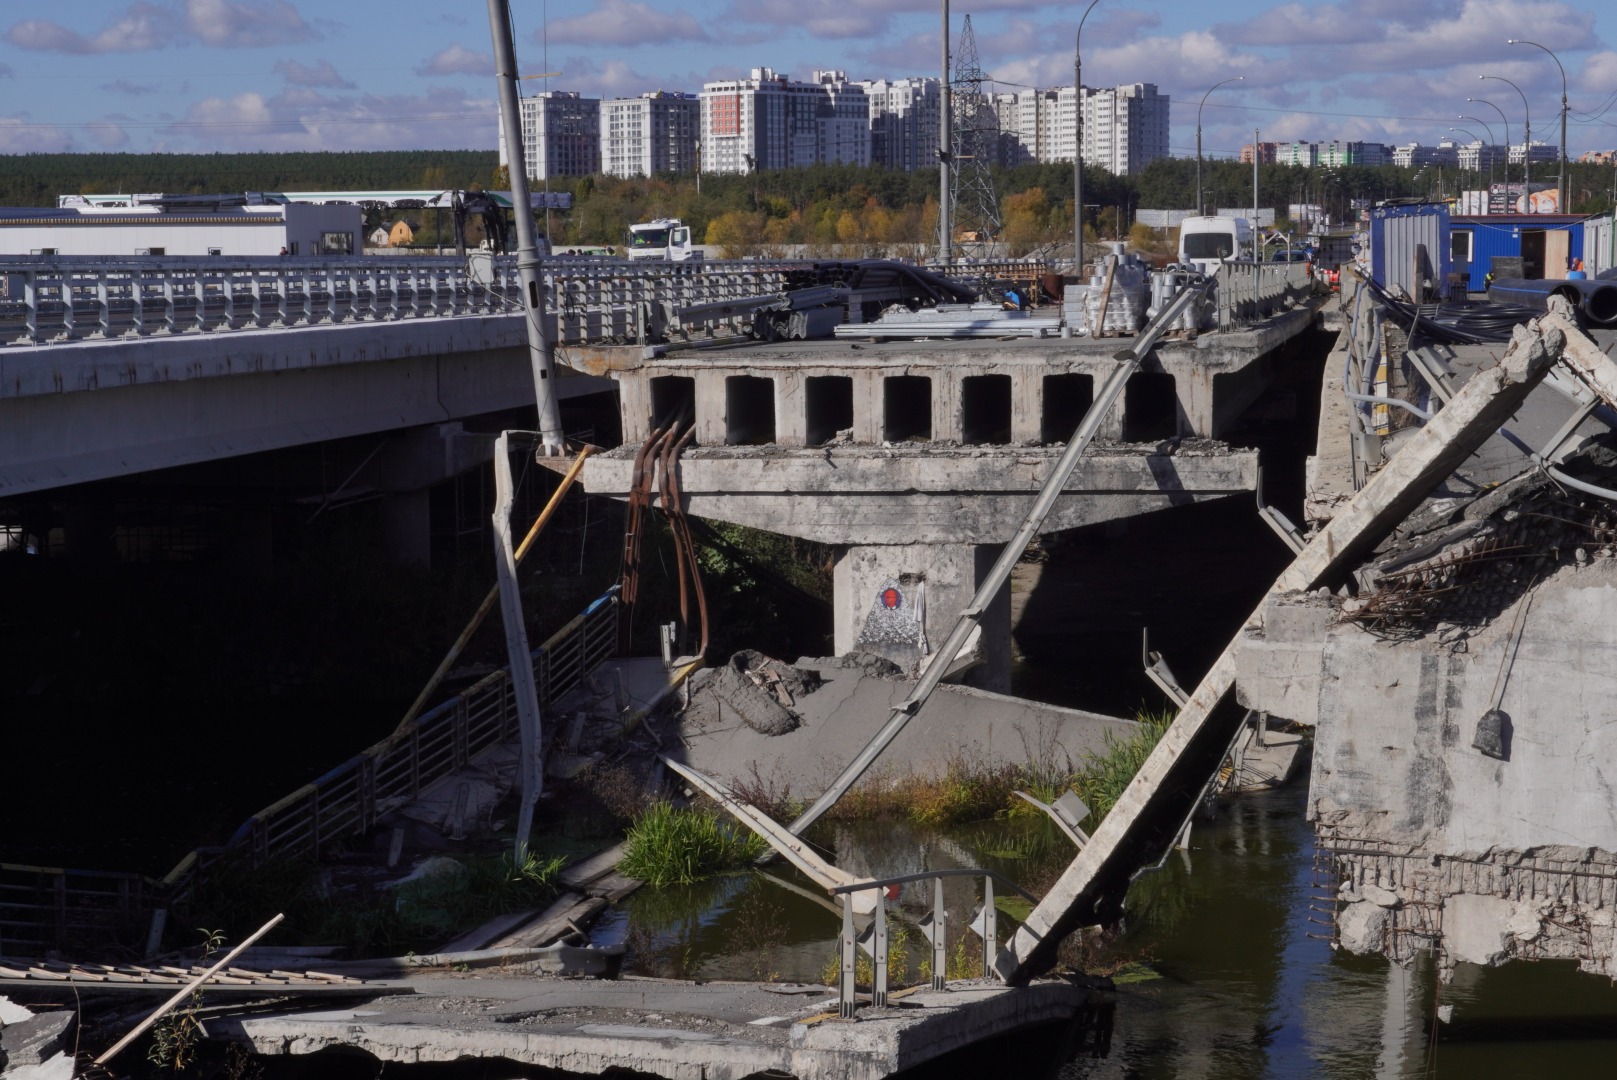 Mission to Ukraine destroyed infrastructure